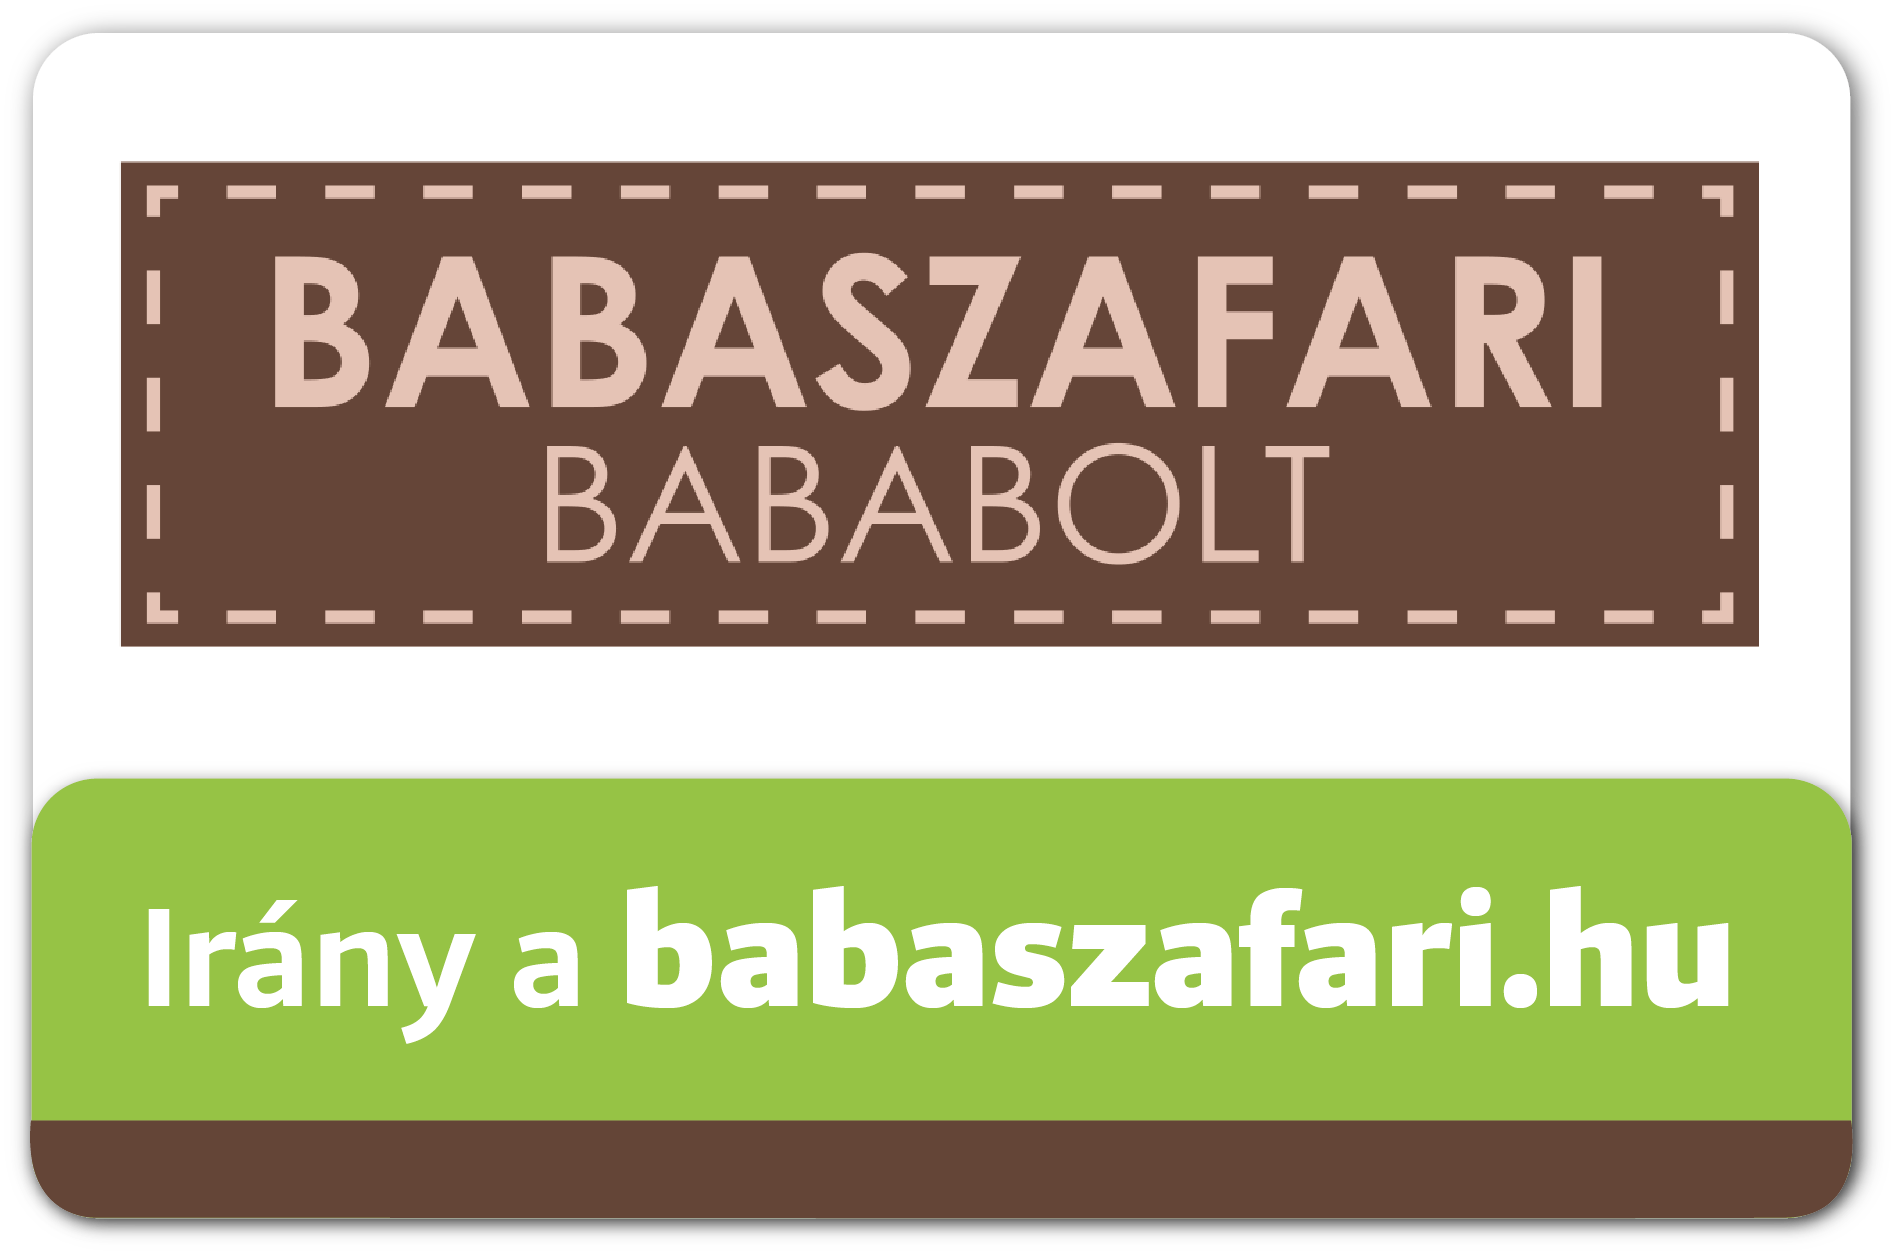 Babaszafari Bababolt